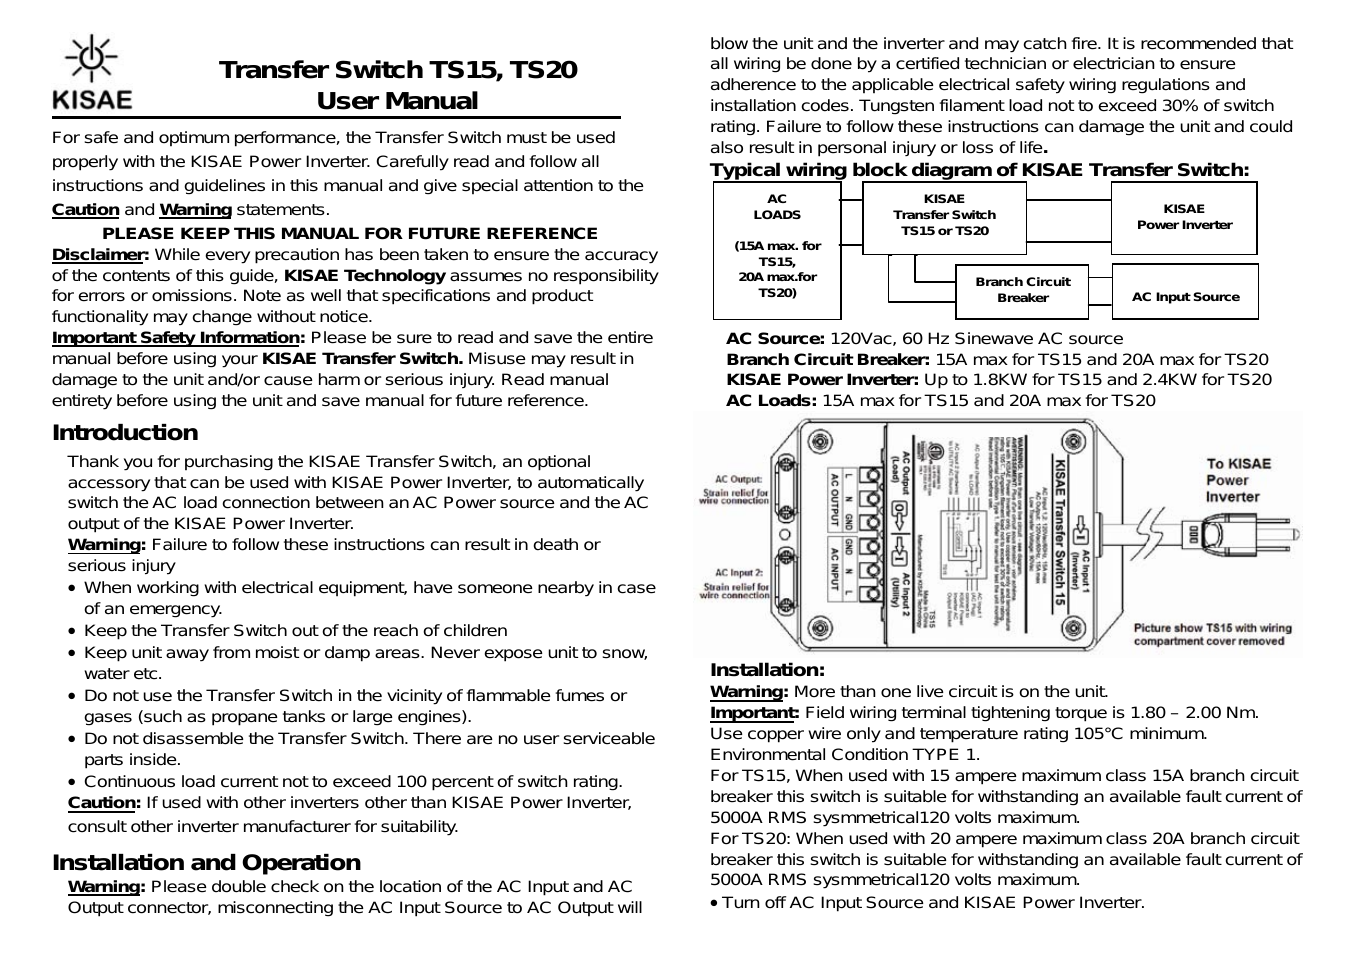 Transfer Switch 20A (120V) (TS20A)